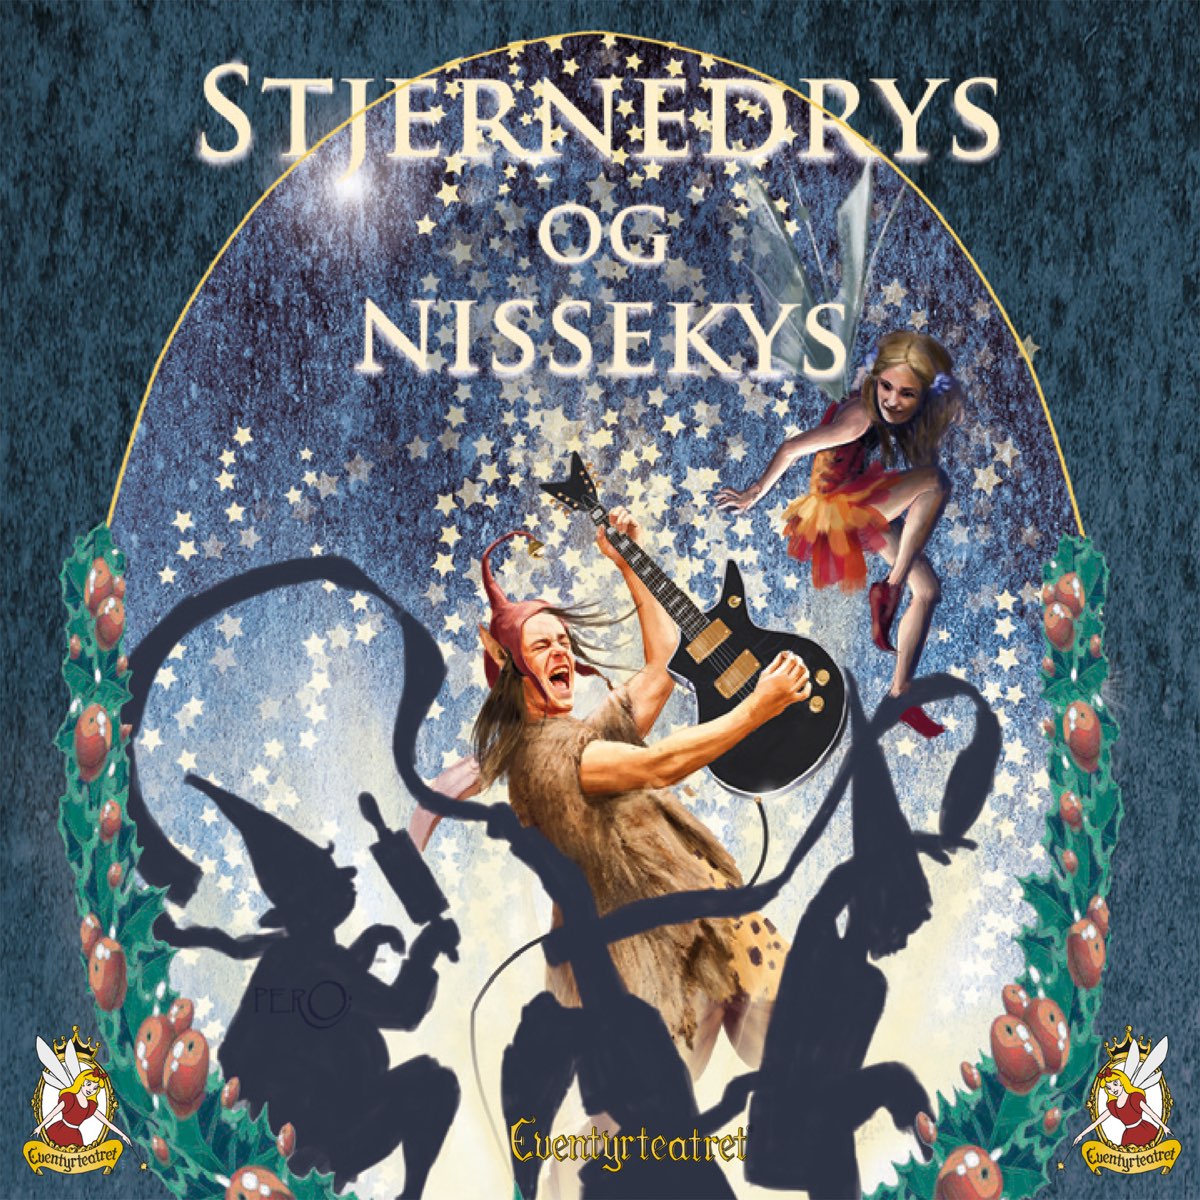 Stjernedrys og Nissekys by Eventyrteatret on Apple Music